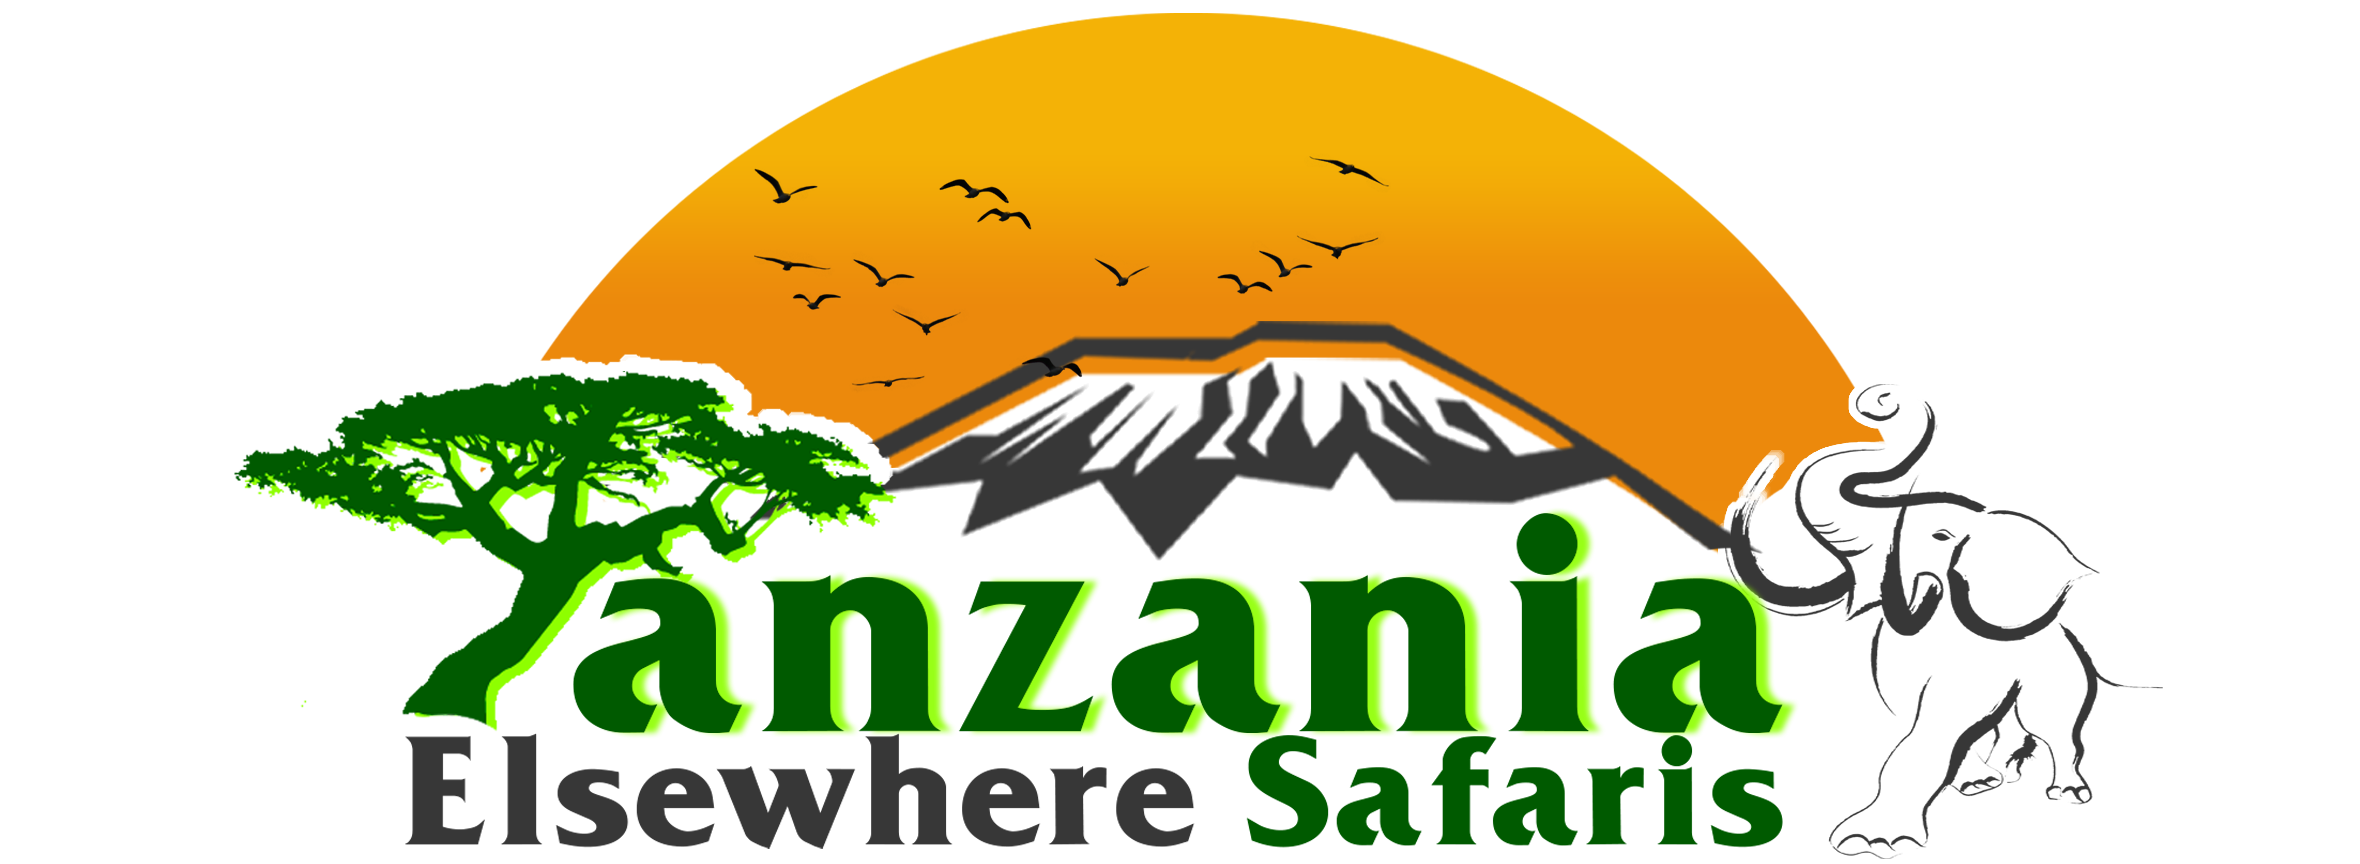 safari tanzania 3 days